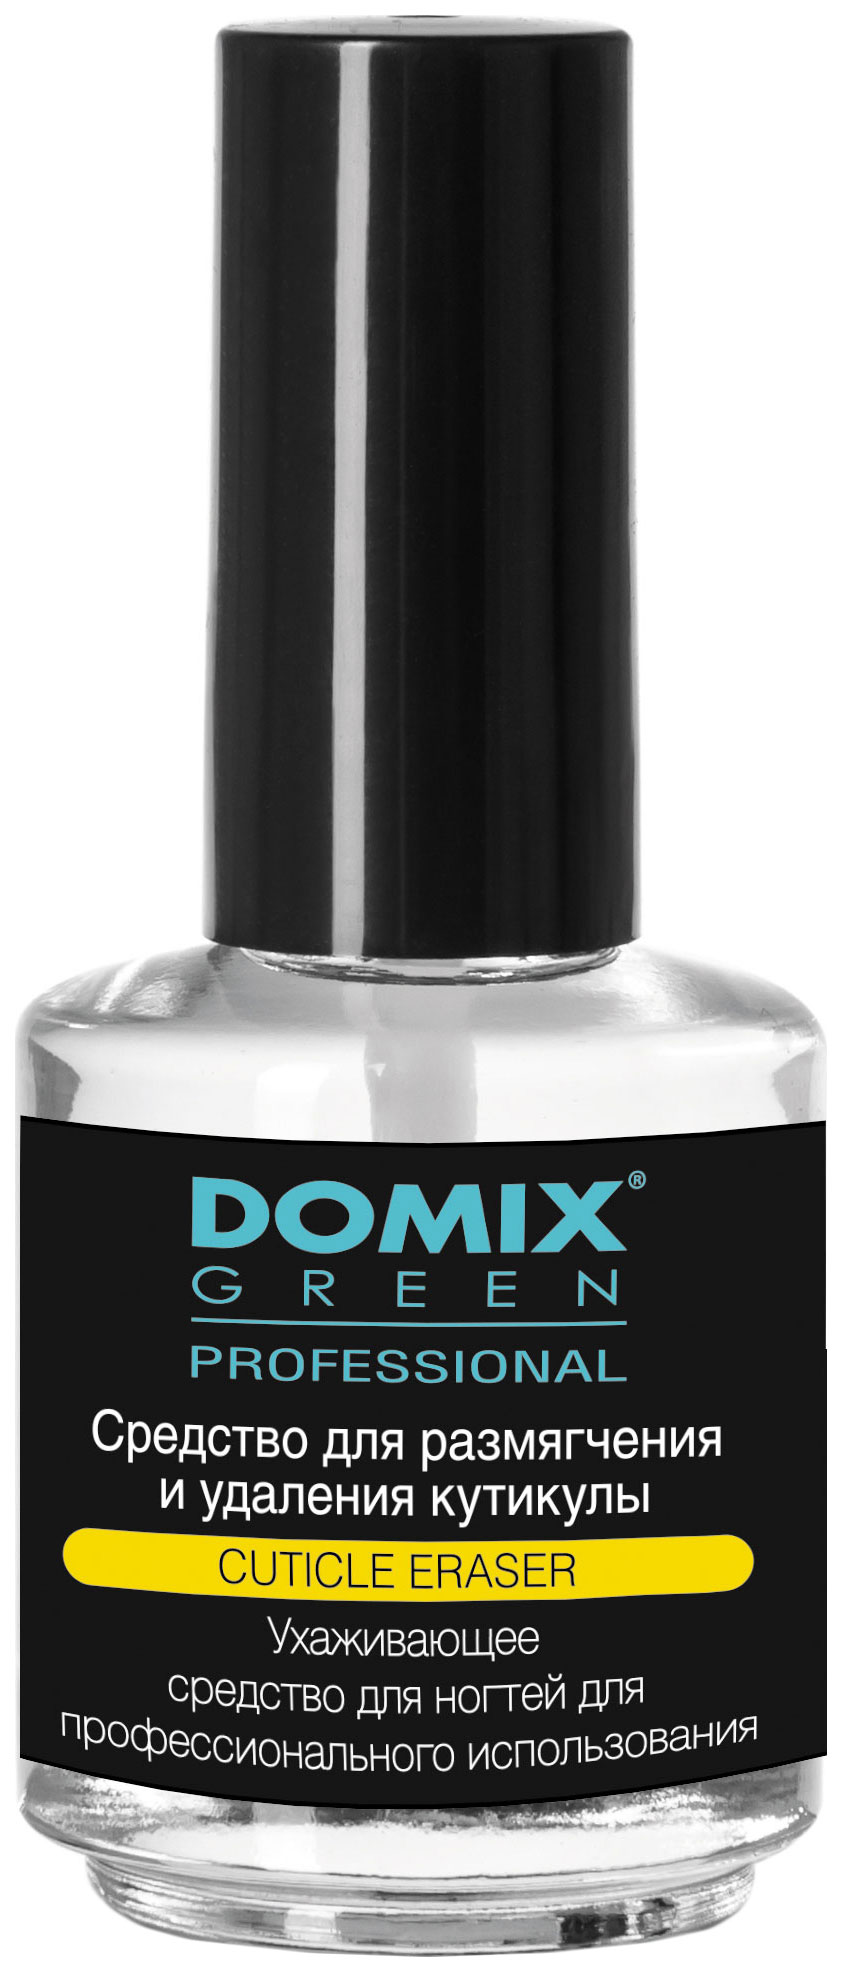 Средство для удаления кутикулы Domix Green Professional Cuticle Eraser 17 мл средство для удаления кутикулы domix cuticle remover lux 113 мл